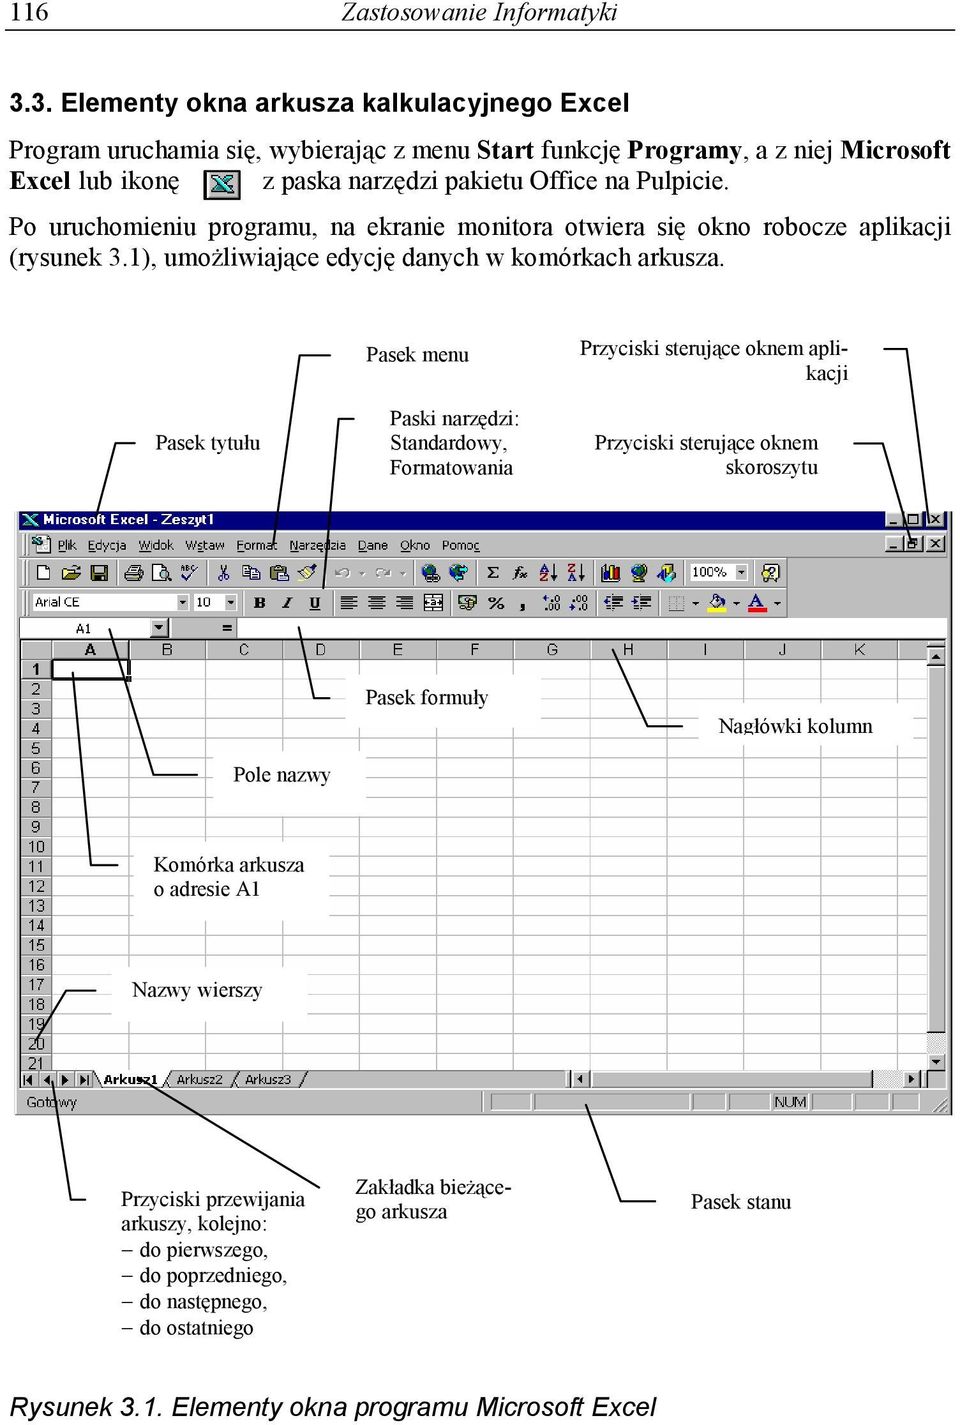 Po uruchomieniu programu, na ekranie monitora otwiera się okno robocze aplikacji (rysunek 3.1), umożliwiające edycję danych w komórkach arkusza.